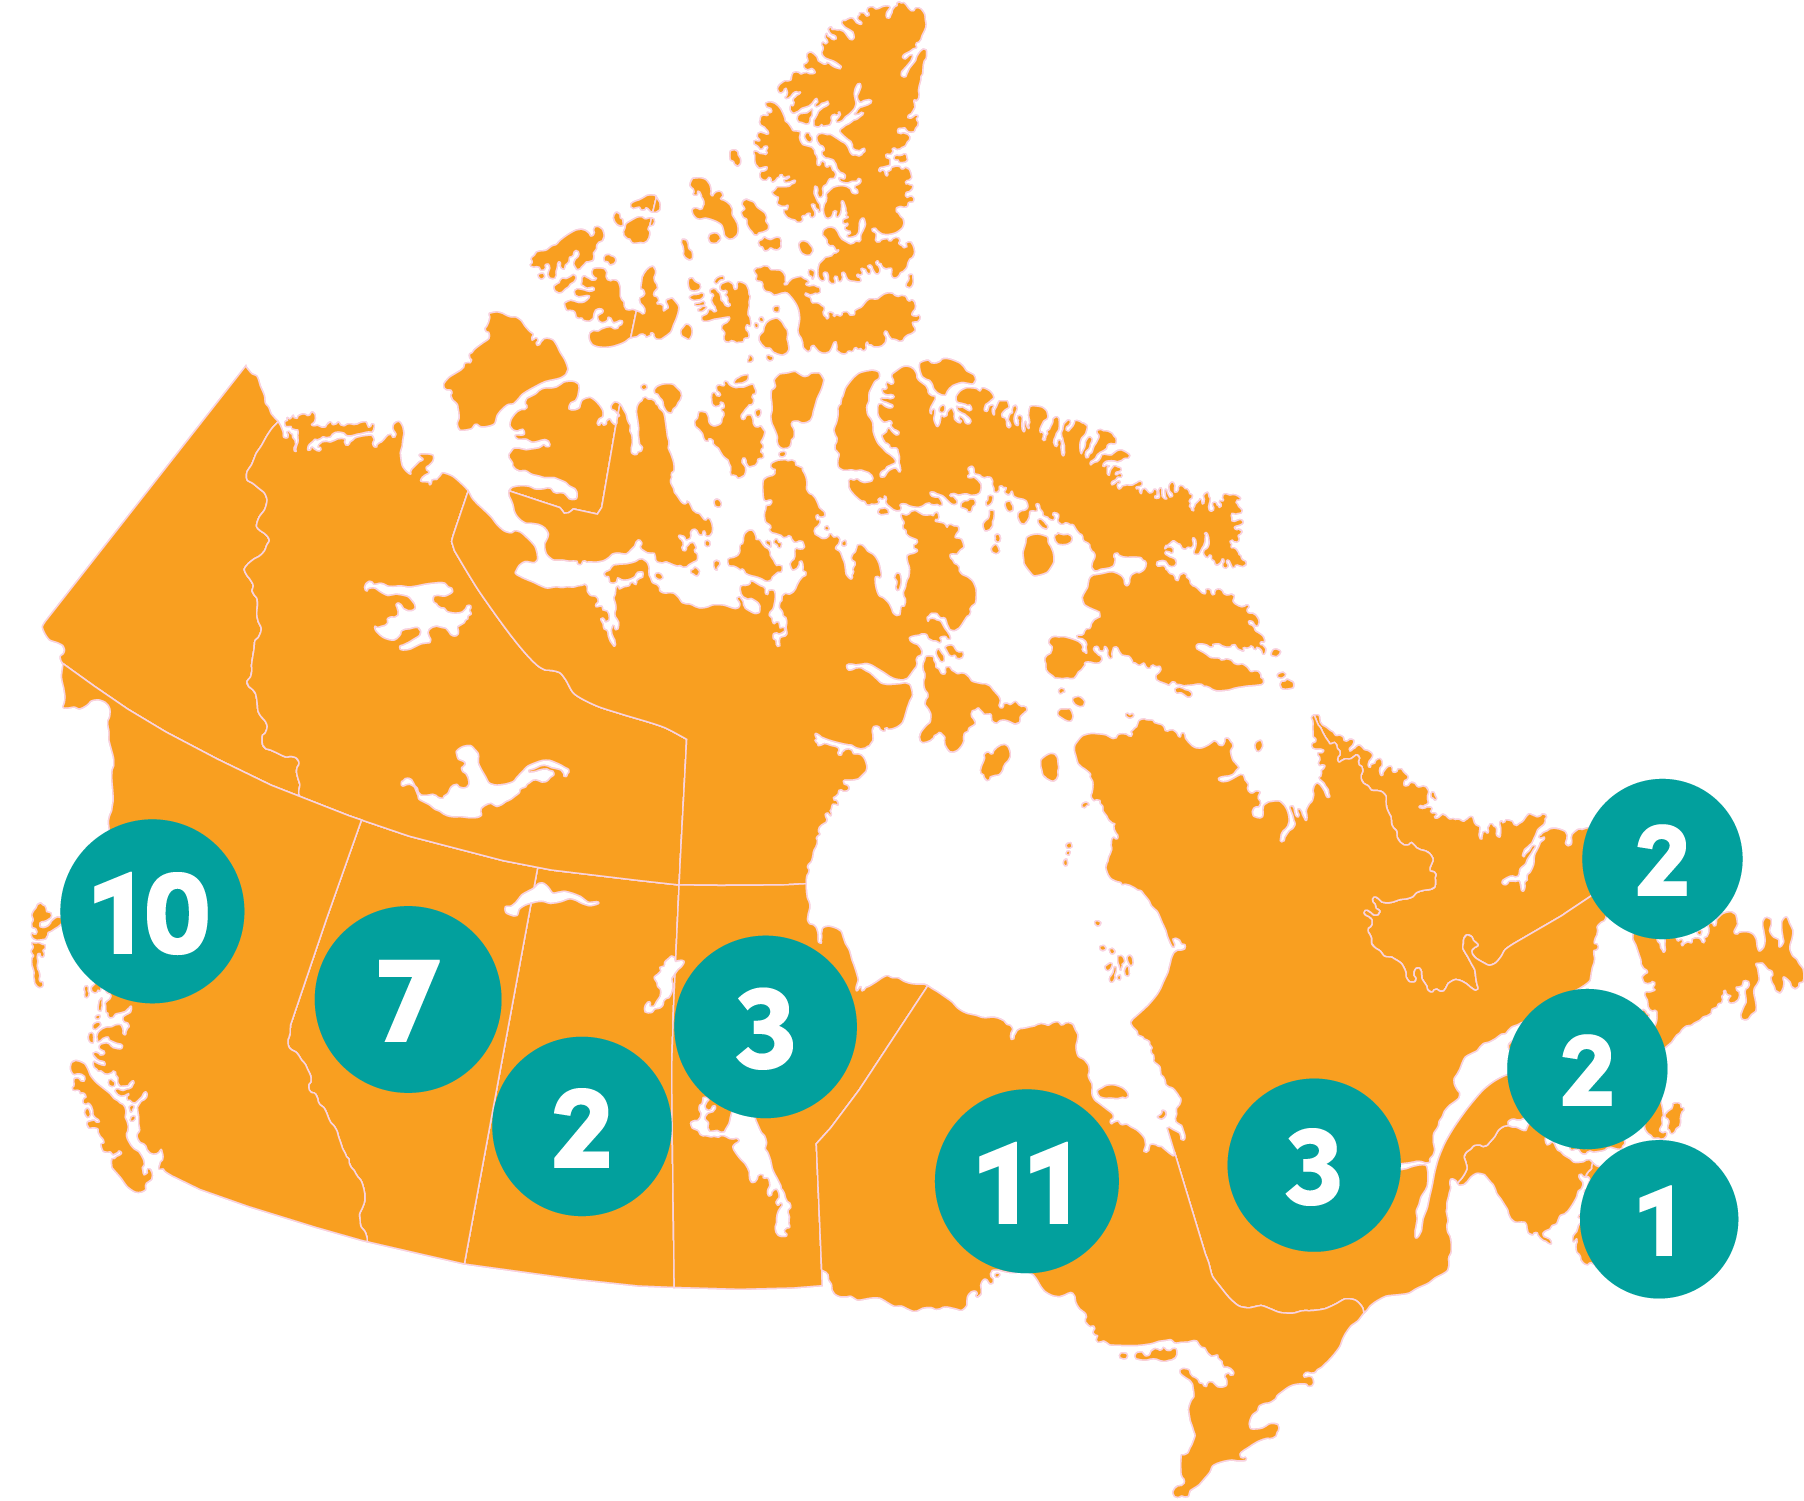 Map of Canada showing 10 teams in British Columbia, seven teams in Alberta, two teams in Saskatchewan, three teams in Manitoba, 11 teams in Ontario, three teams in Quebec, one team in Nova Scotia, two teams in Prince Edward Island and two teams in Newfoundland and Labrador.